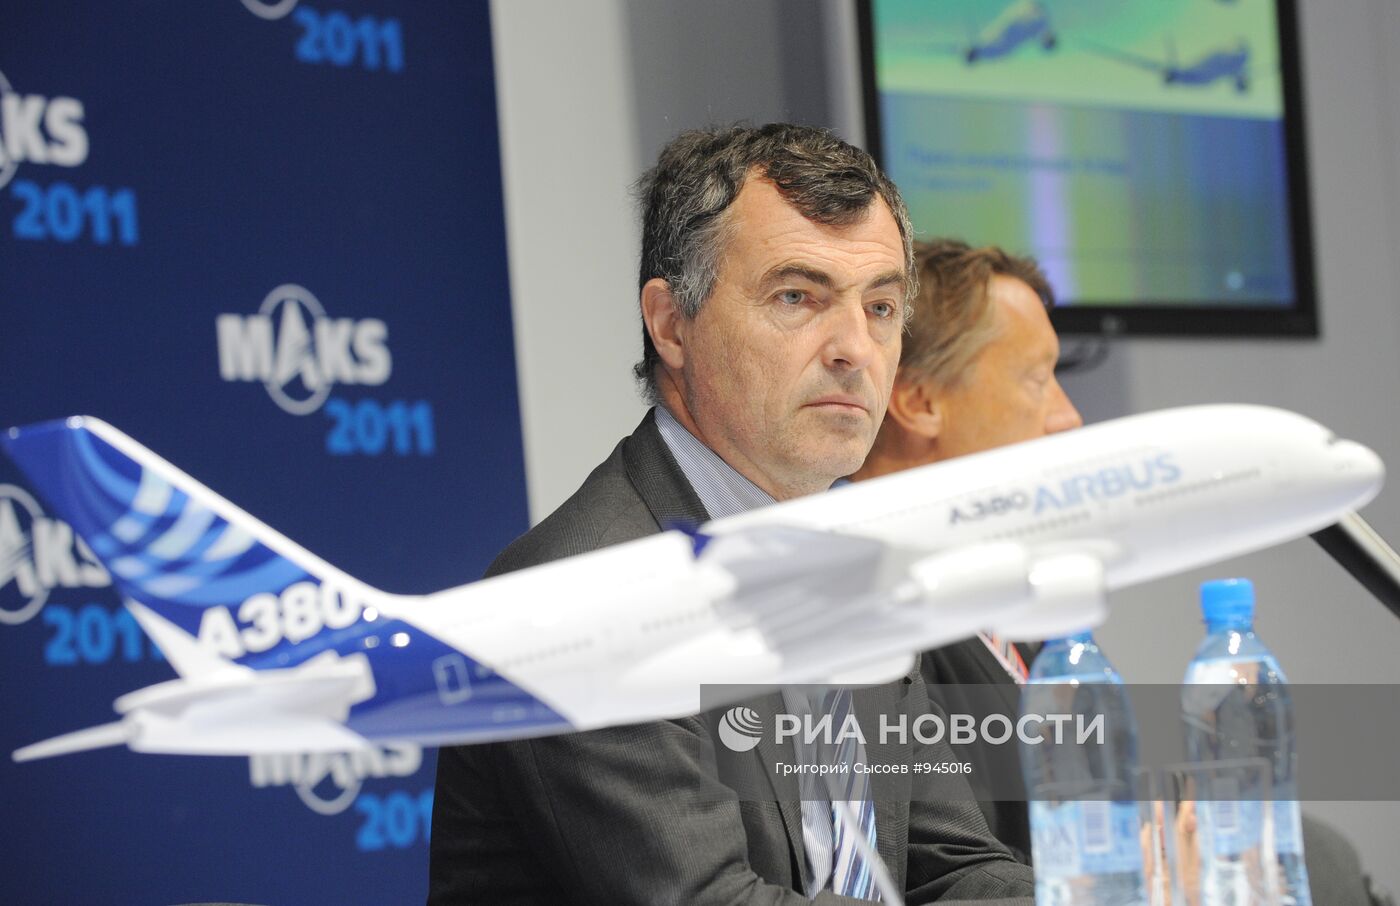 Пресс-конференция руководства компании Airbus